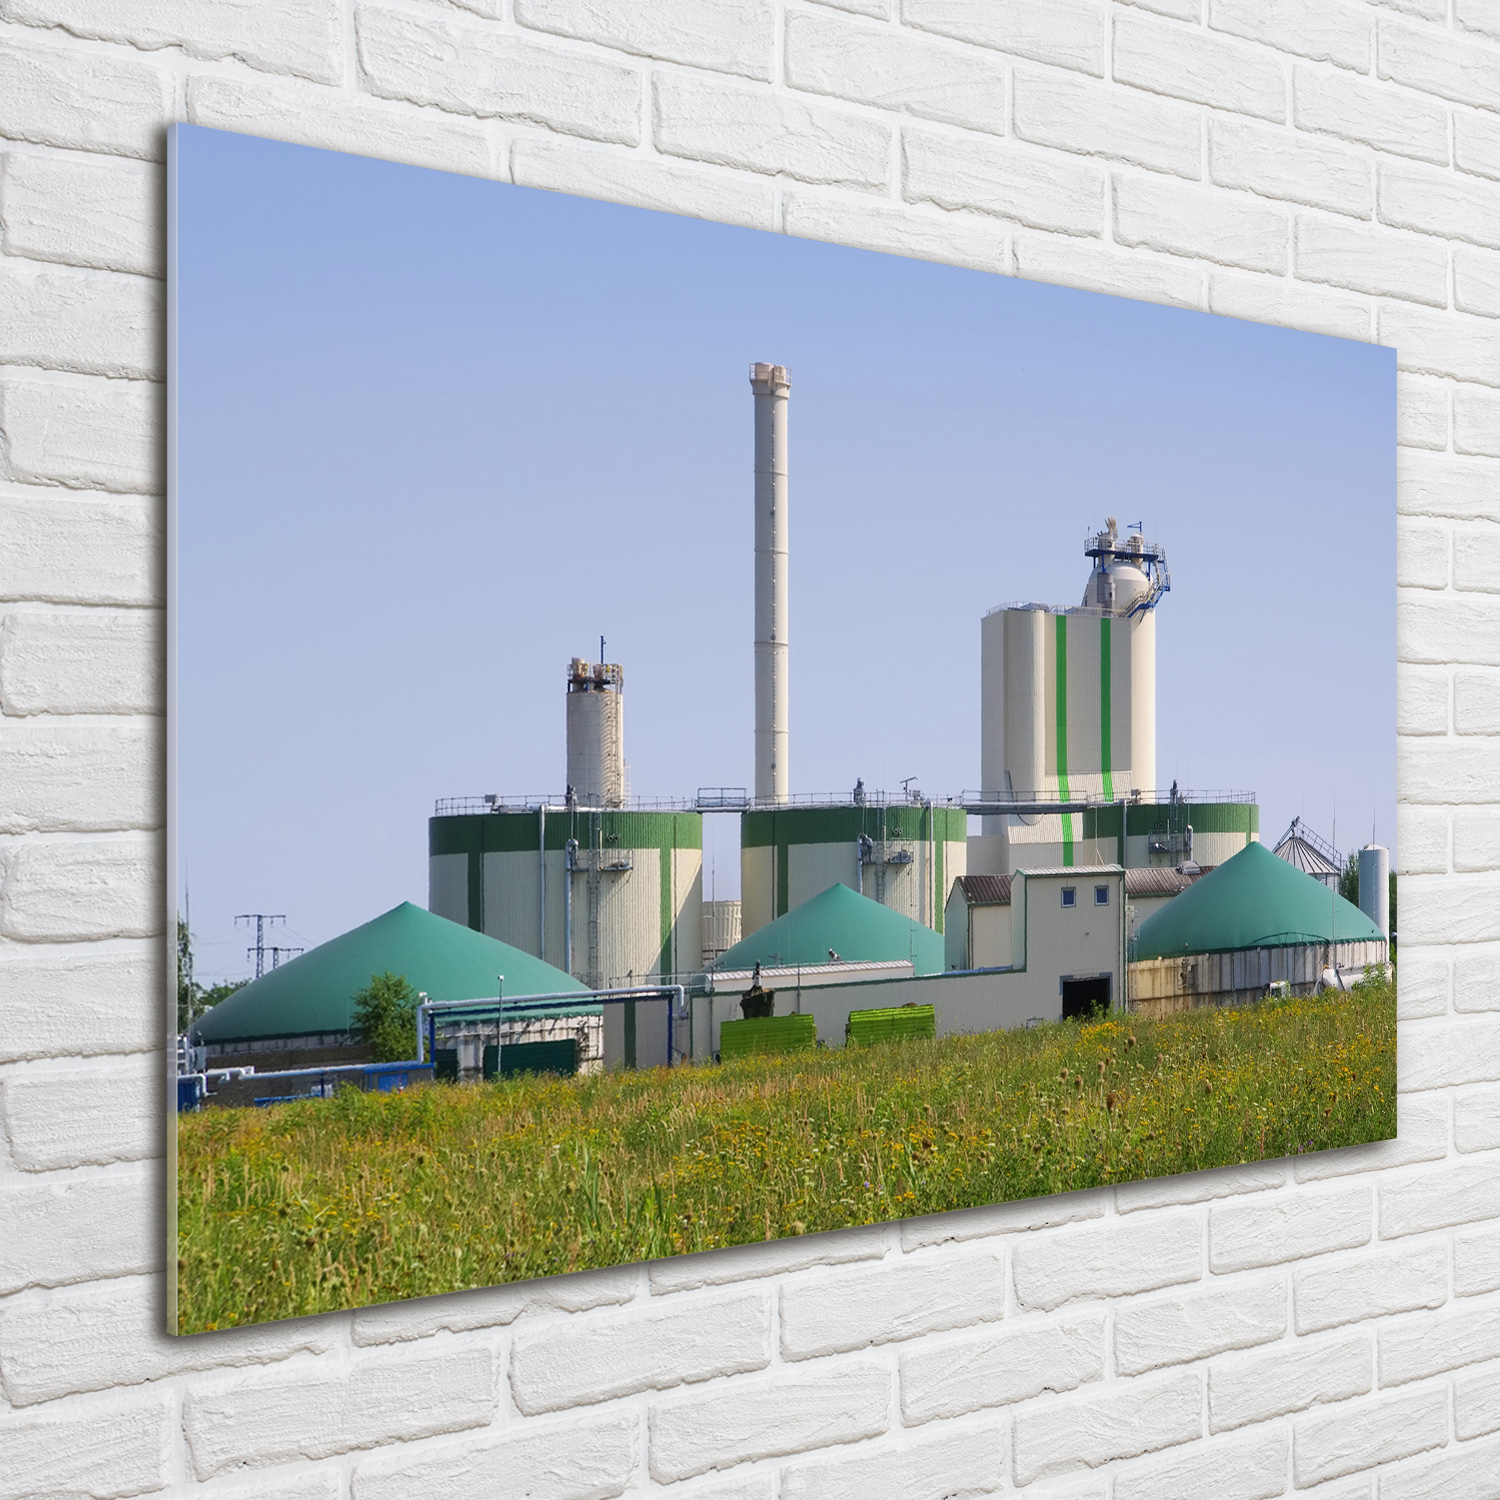 Glas-Bild Wandbilder Druck auf Glas 100x70 Deko Sehenswürdigkeiten Biogasanlage